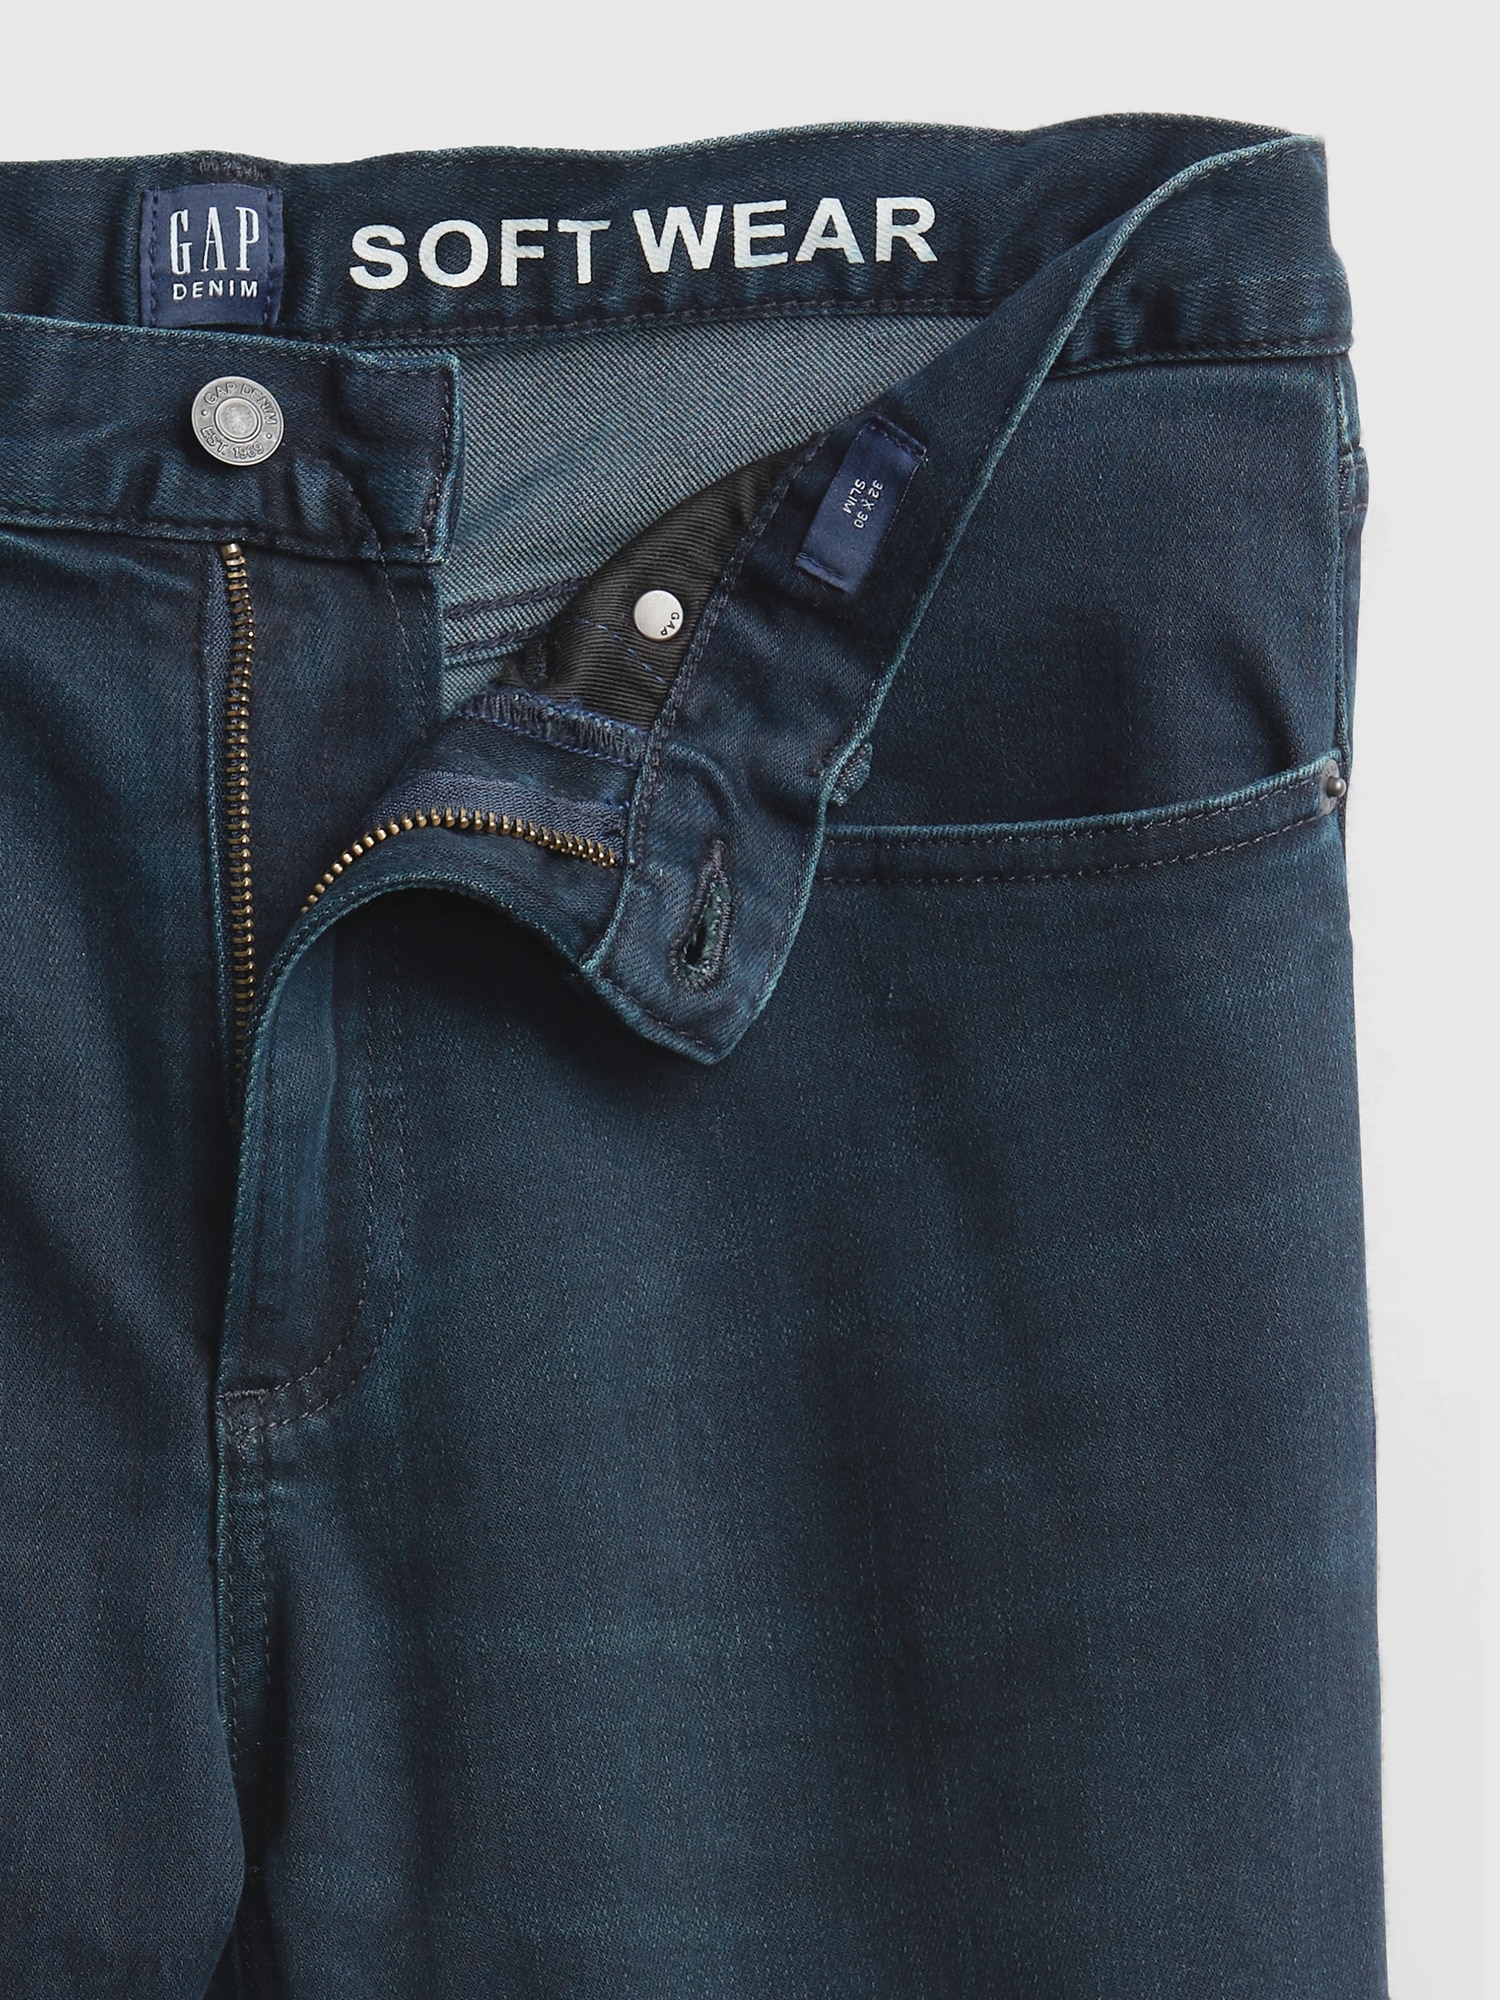 GAP Slim Jeans for Men - Poshmark